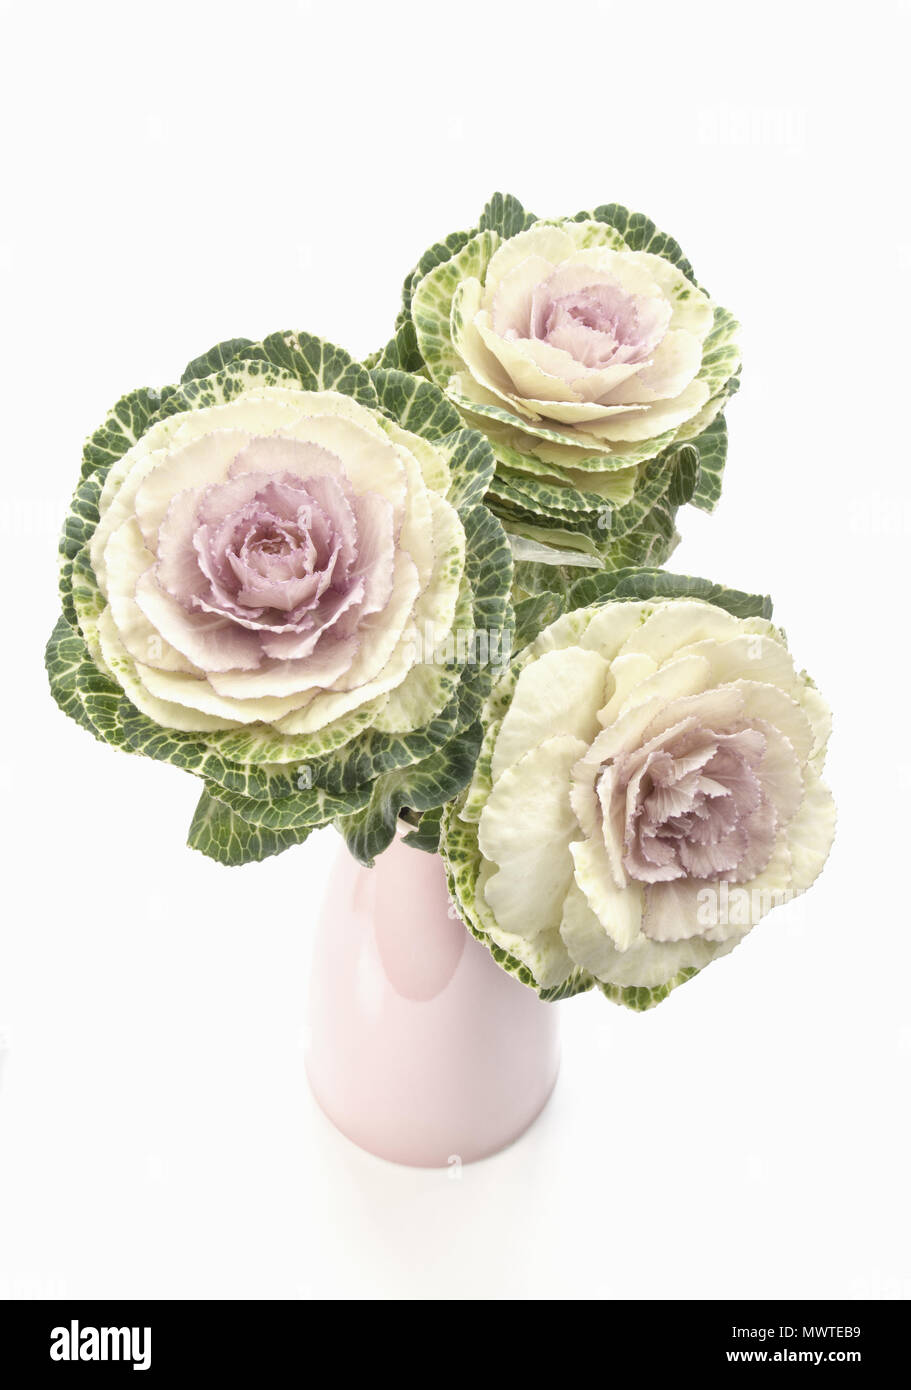 Kale ornementales dans un vase rose high key Banque D'Images